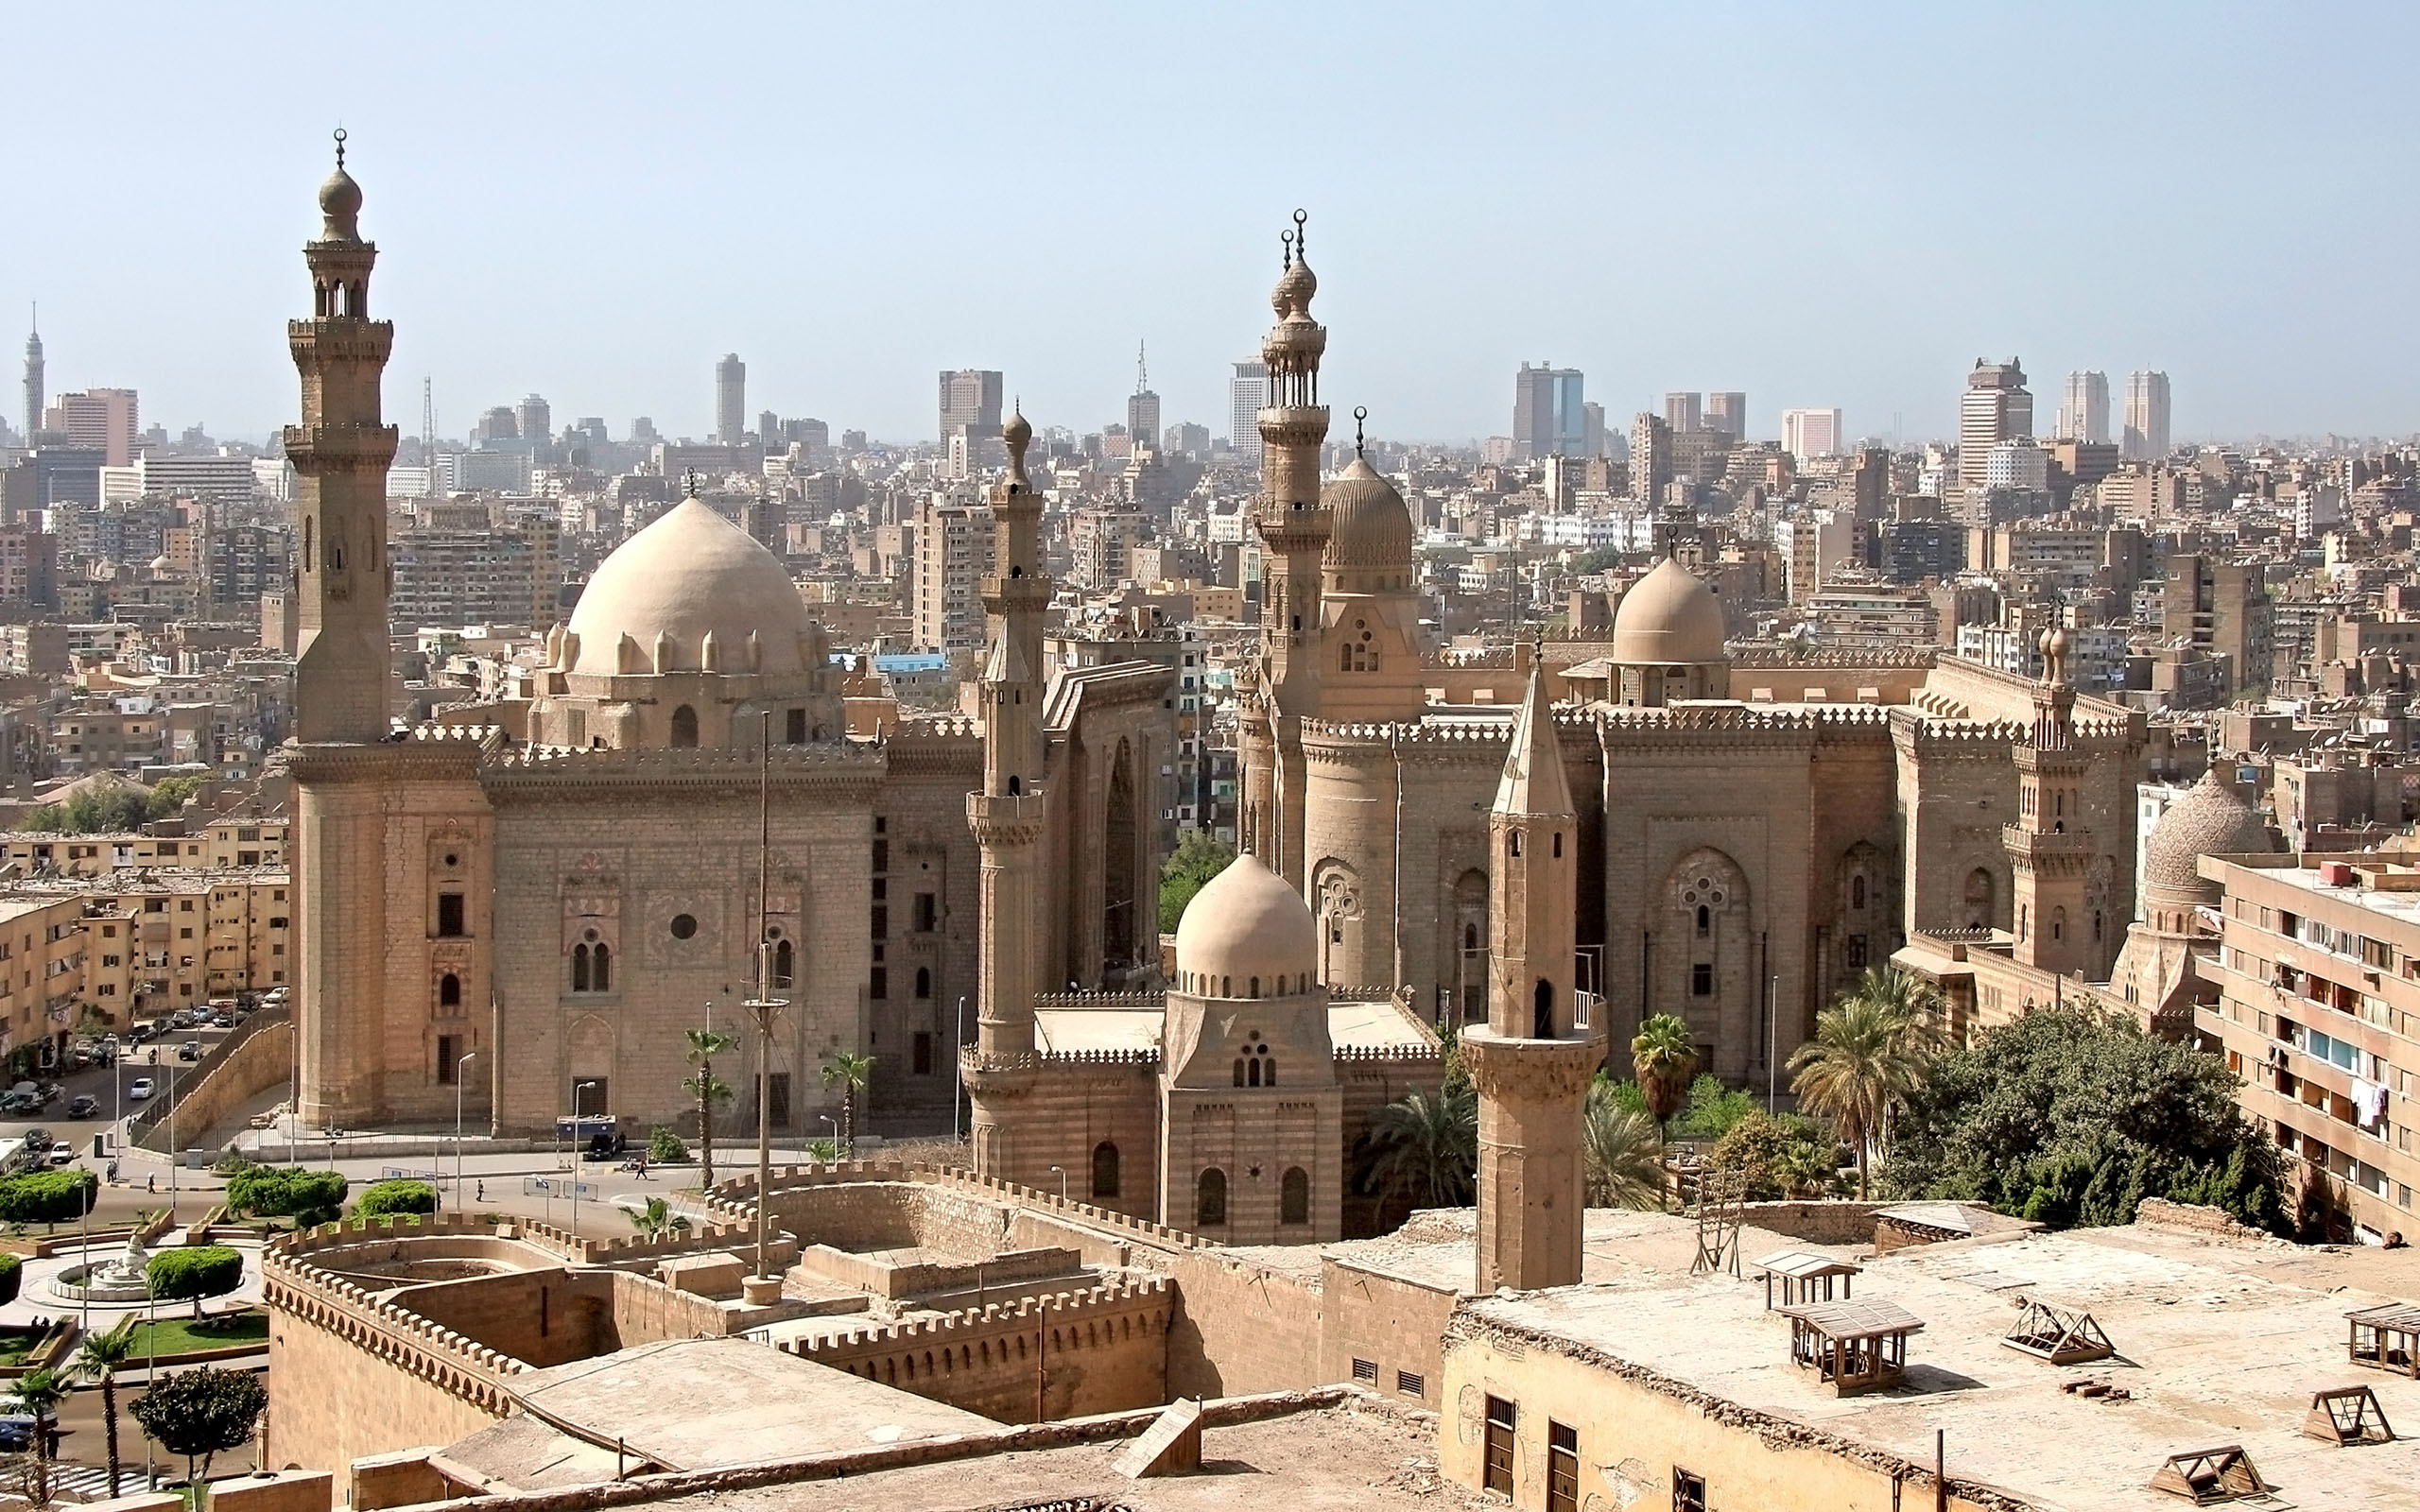 Cairo #7